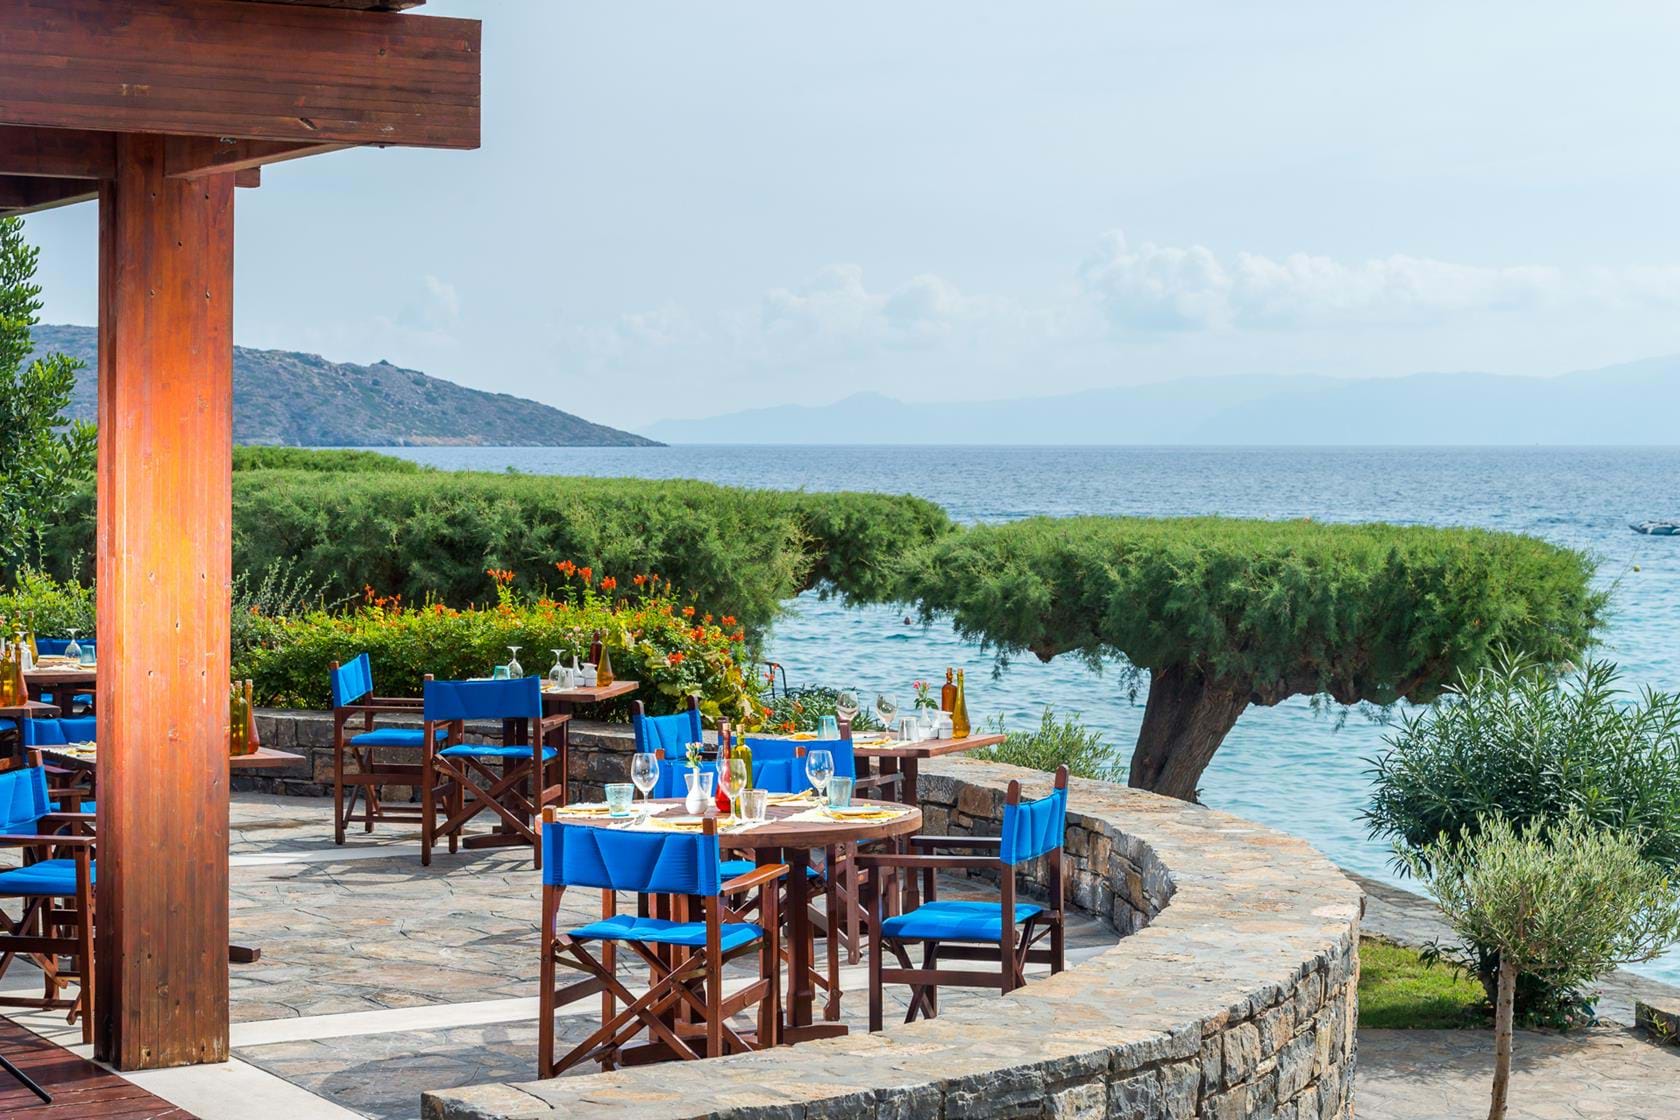 Restaurant Ariadne de l'Hôtel Elounda Bay 5étoiles situé à Elounda proche d'Aghios Nicolaos en Crète